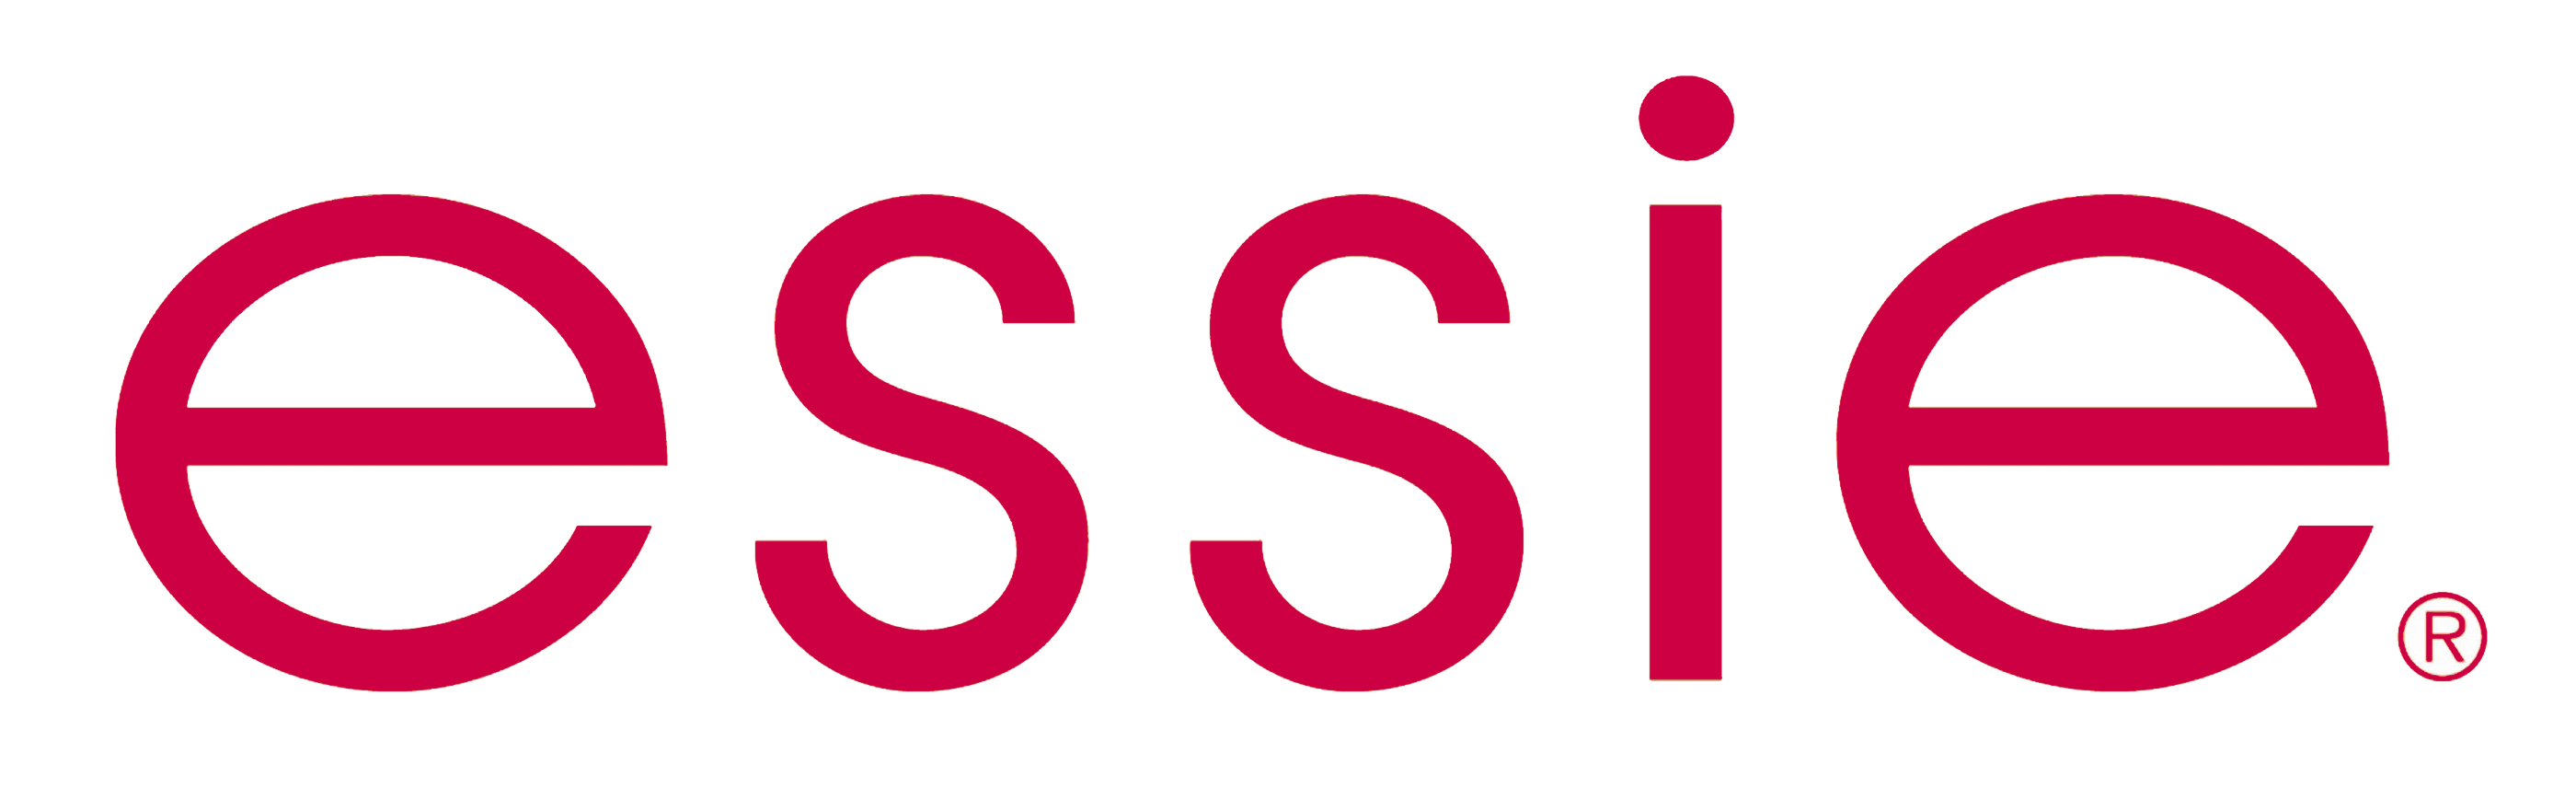 Essie Red Logo Wallpaper